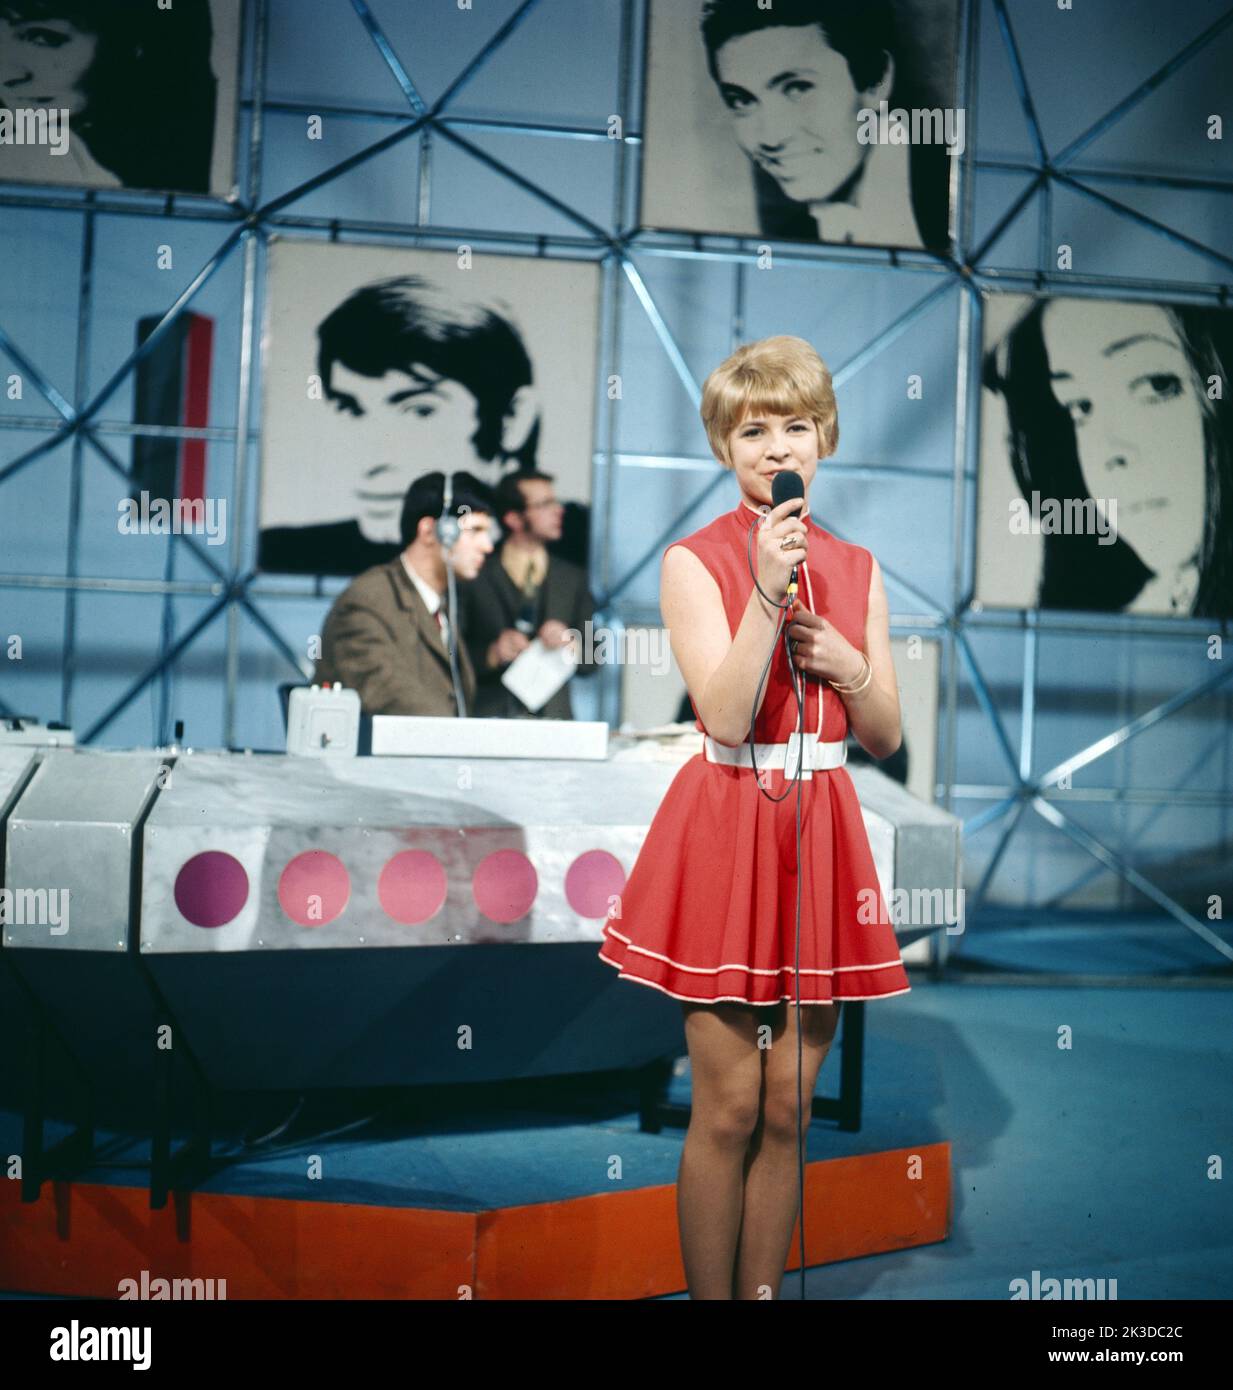 ZDF Hitparade, Musiksendung, Deutschland, 1969, Gaby Berger, deutsche Schlagersängerin. Hitparade, TV music show, Germany, 1969, Gaby Berger, German pop singer. Stock Photo